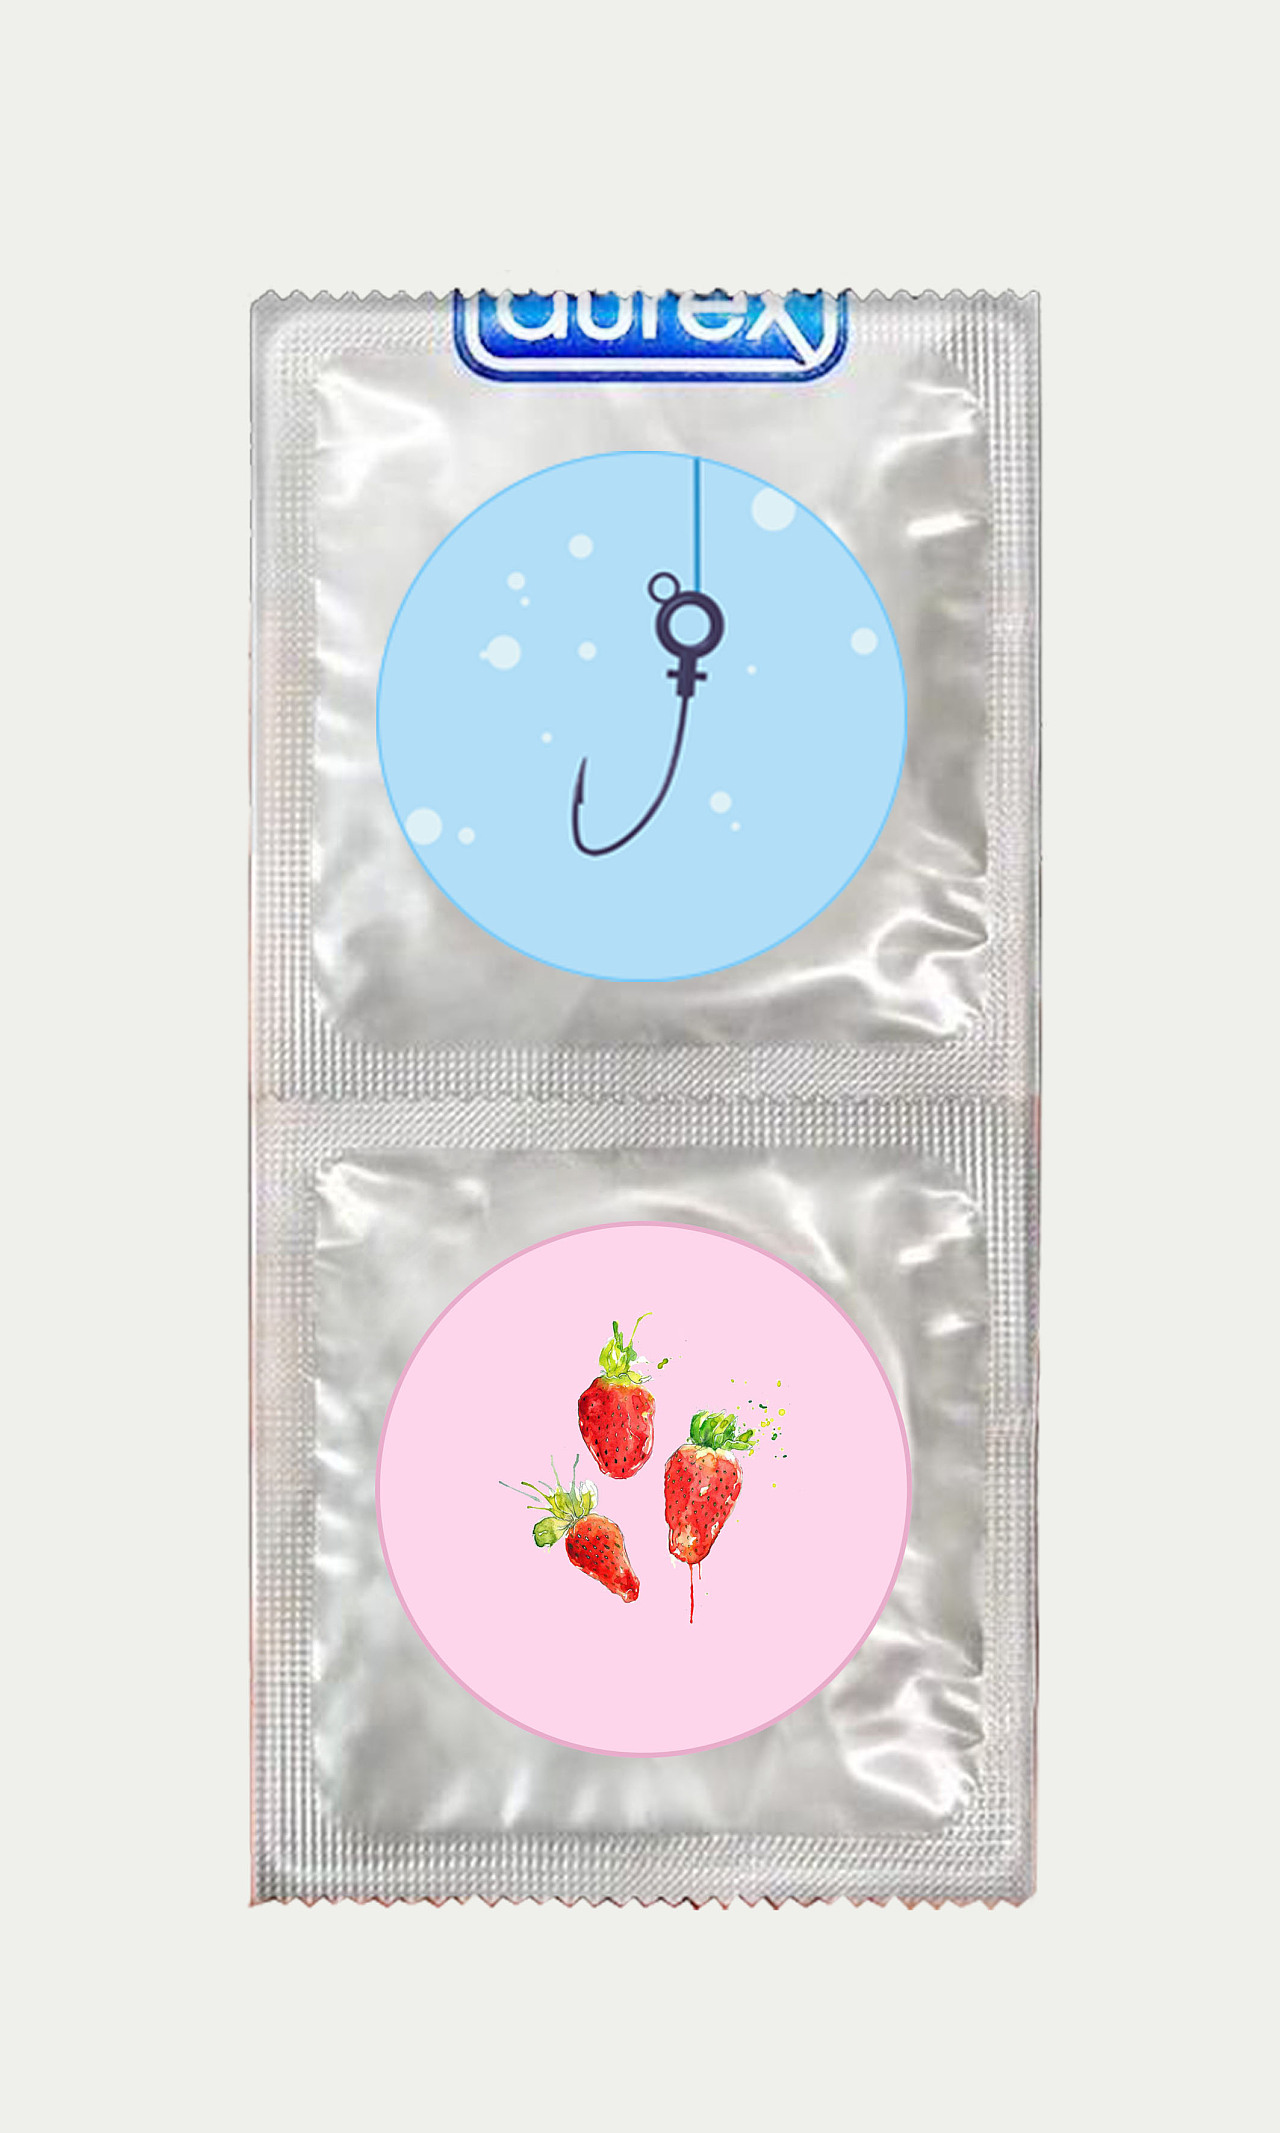 伊梦尔-避孕套品牌包装设计|瑞智博诚品牌设计_瑞智博诚品牌设计_【68Design】